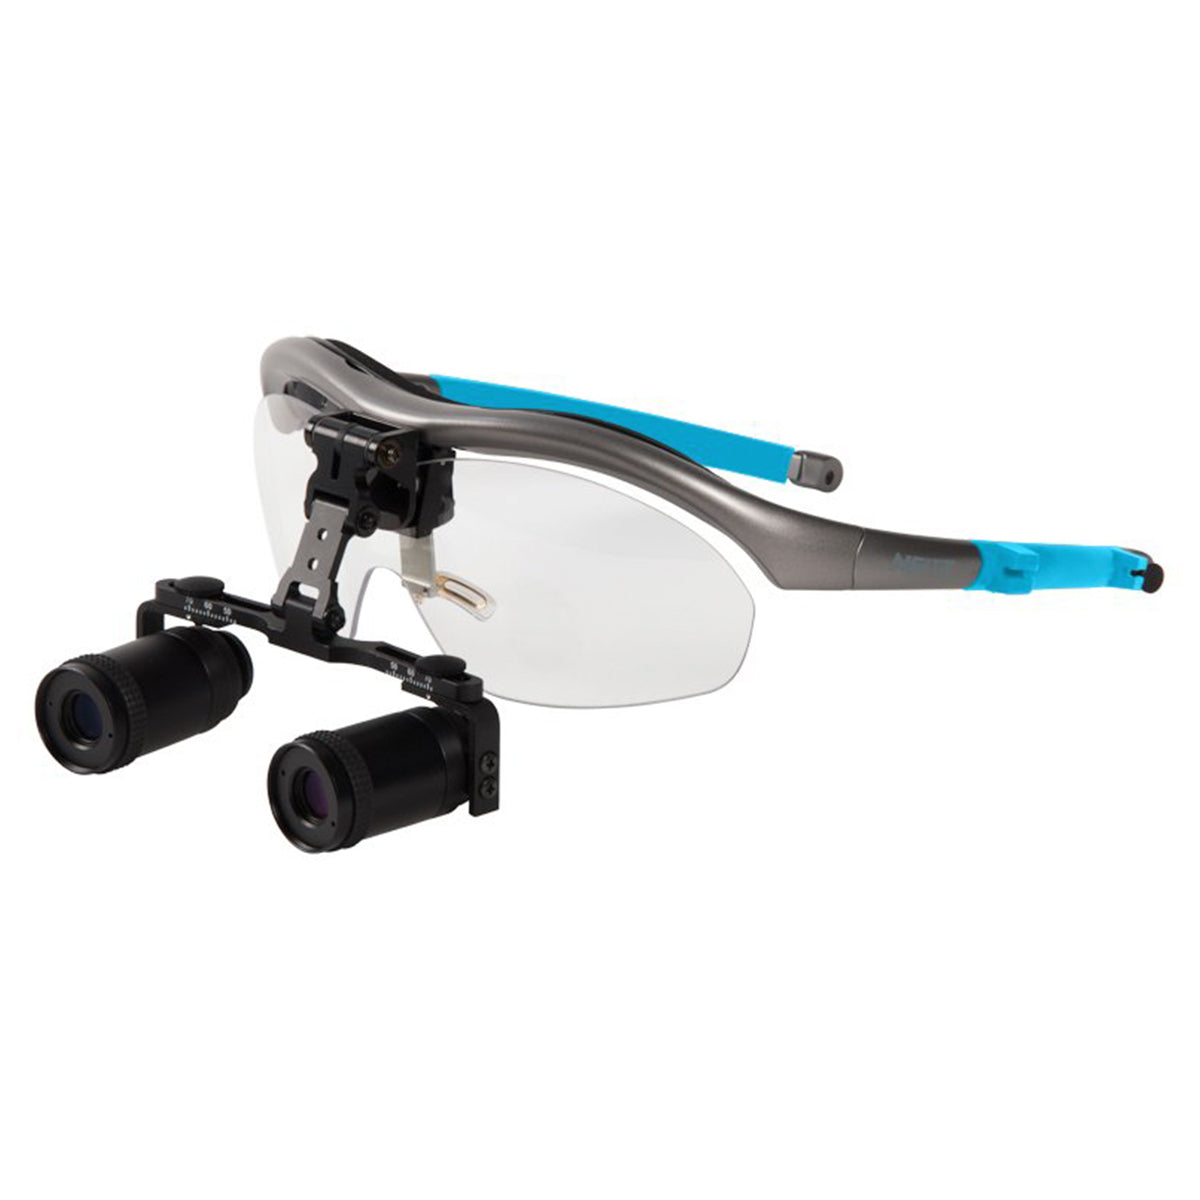 Eyeglass Repair Kit Screwdriver Magnifier Eye Glasses Tools Nose Pad C